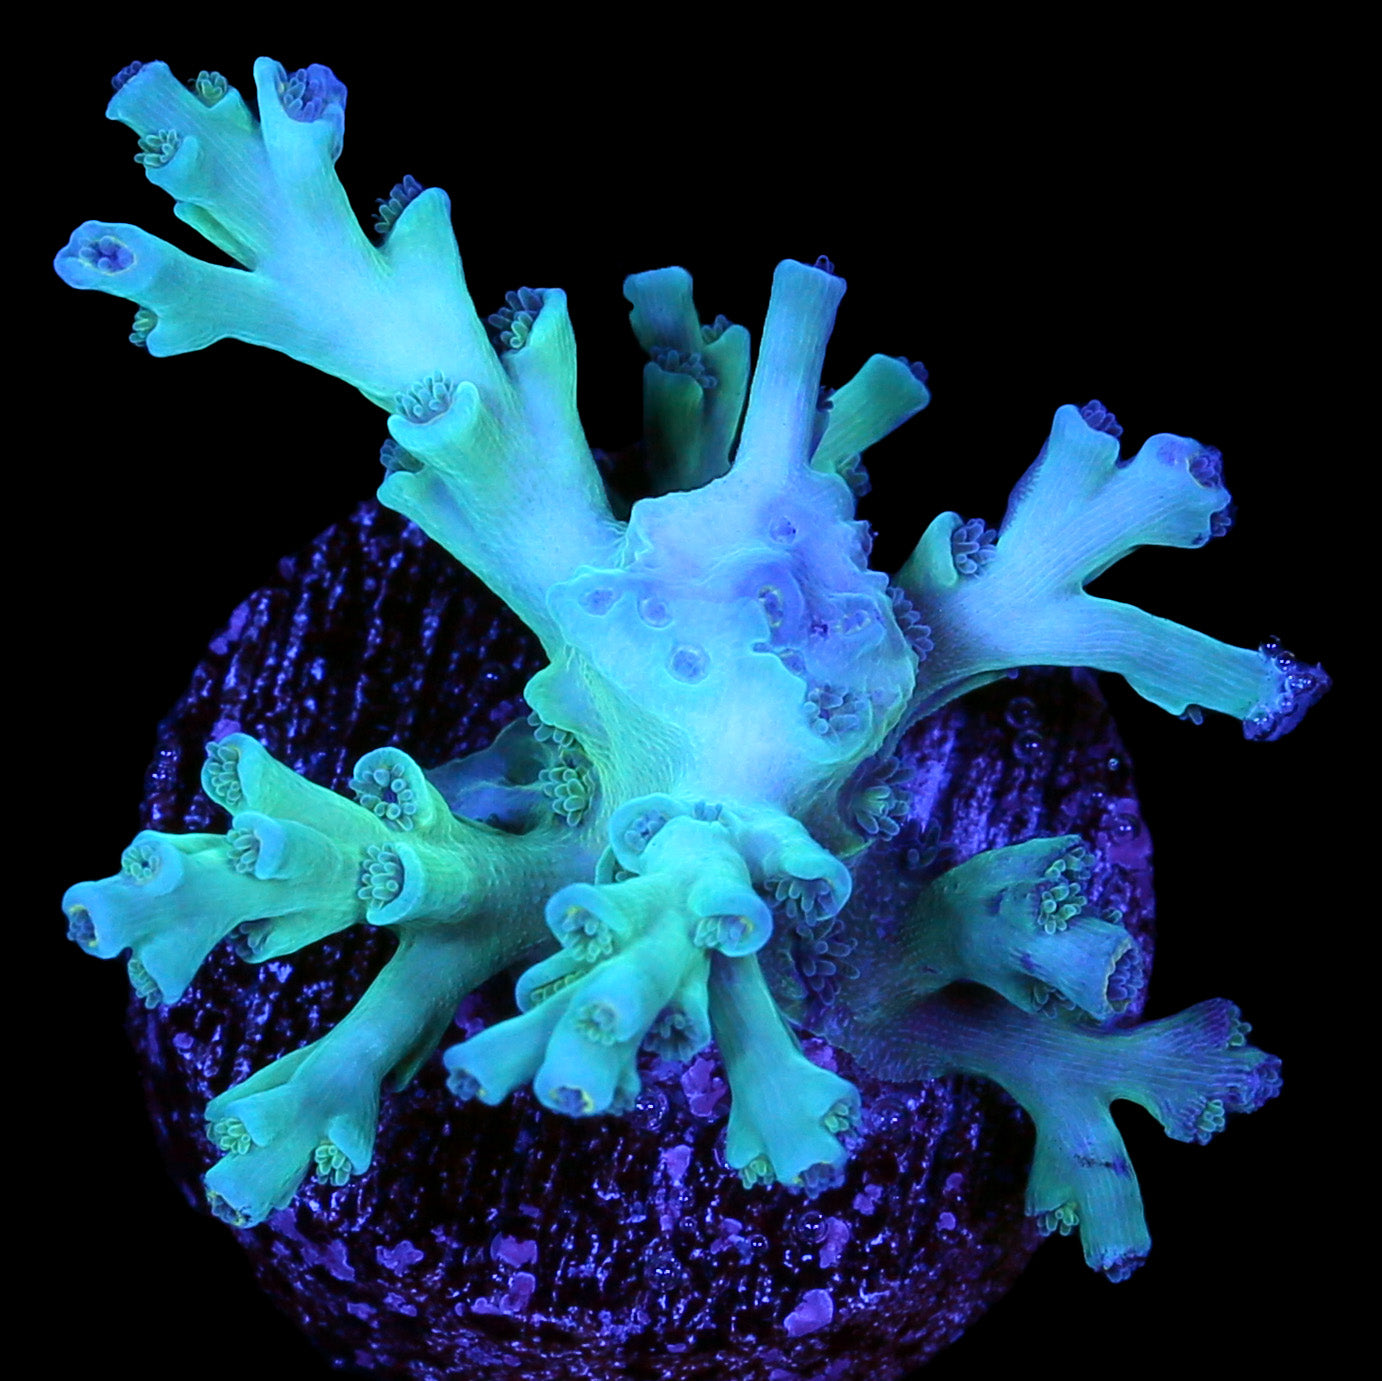 Ice Fire Echinata Acropora Coral